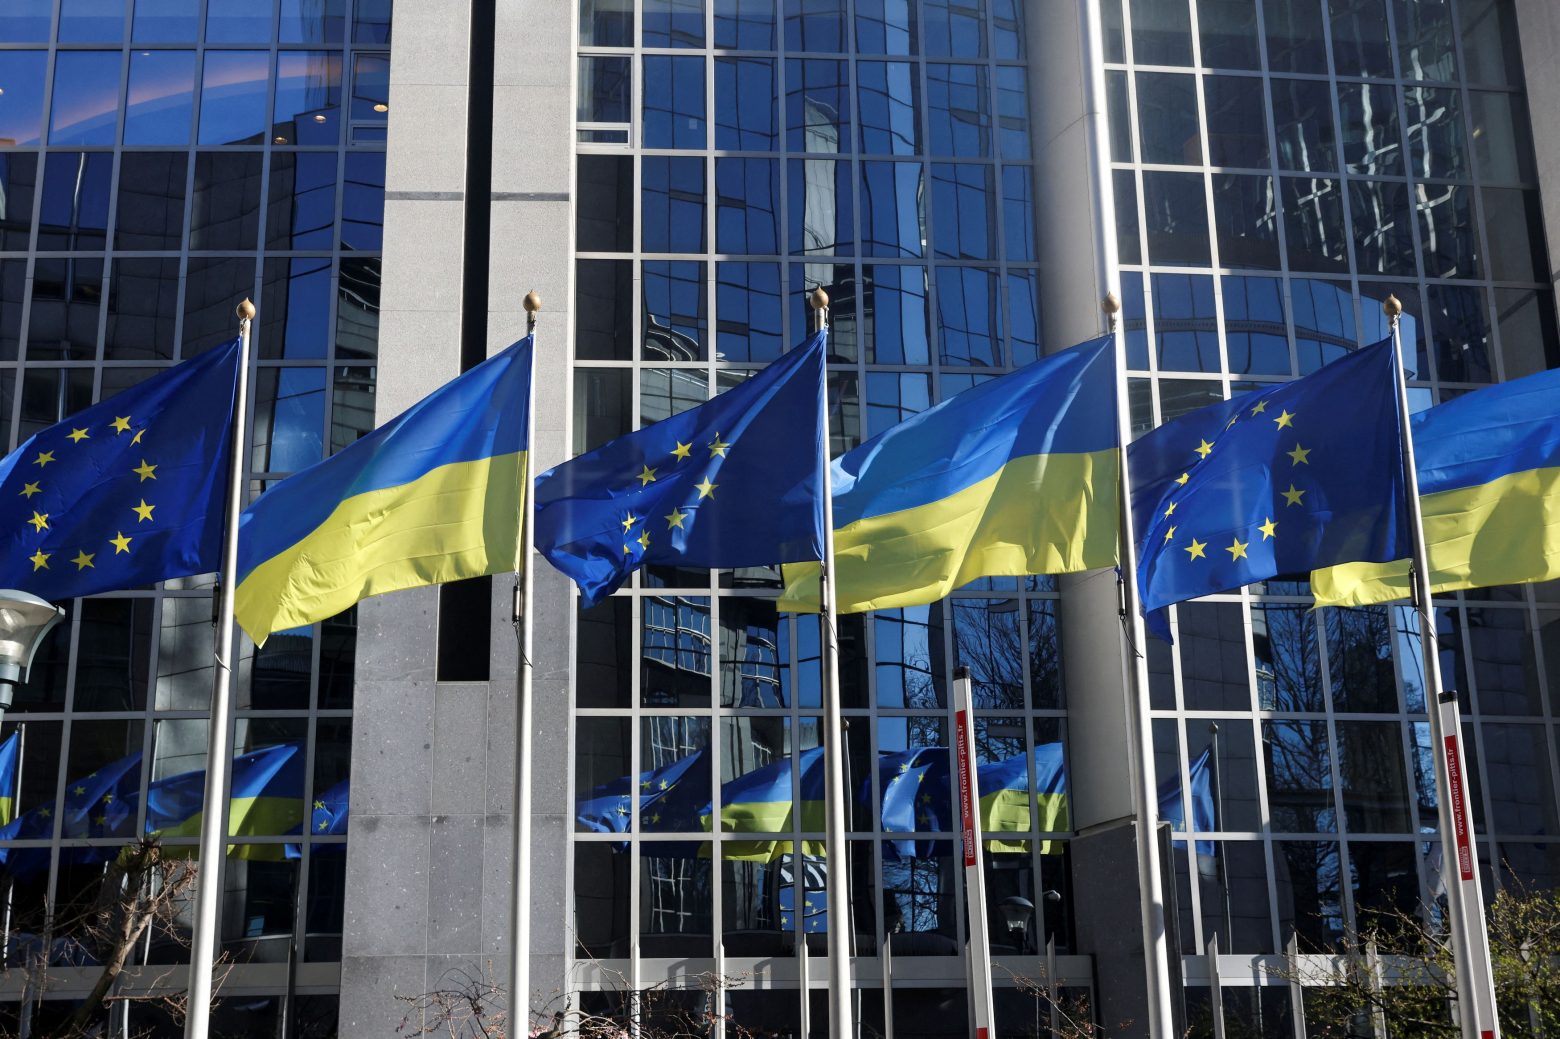 Guerre en Ukraine : menace pour la démocratie en Europe Intervention étrangère selon le Parlement européen